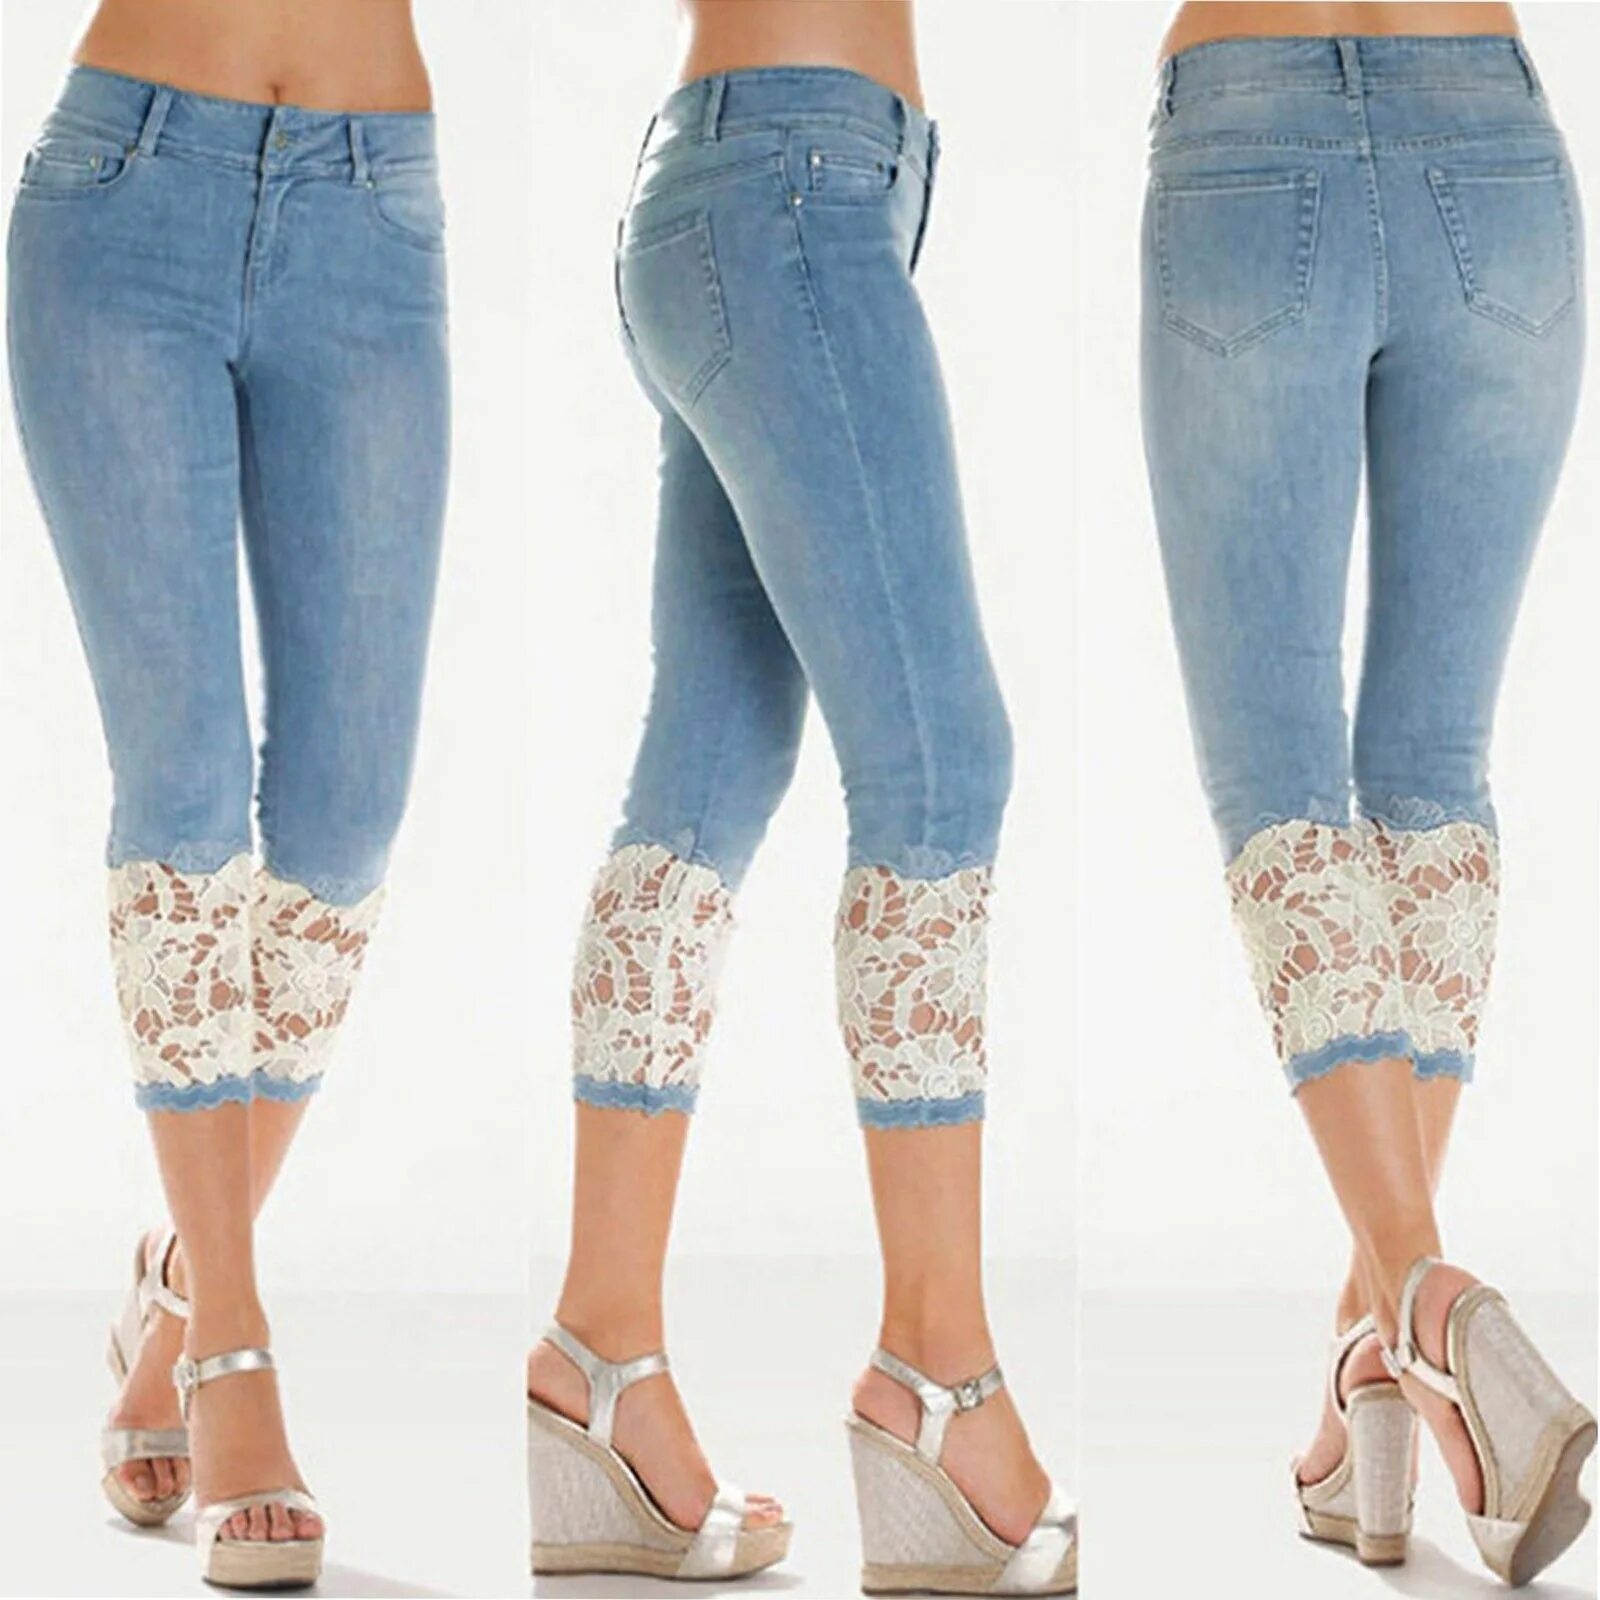 Джинсы с кружевом. Летние джинсы. Джинсы летние женские. Красивые джинсы. Джинсы тонкие летние женские